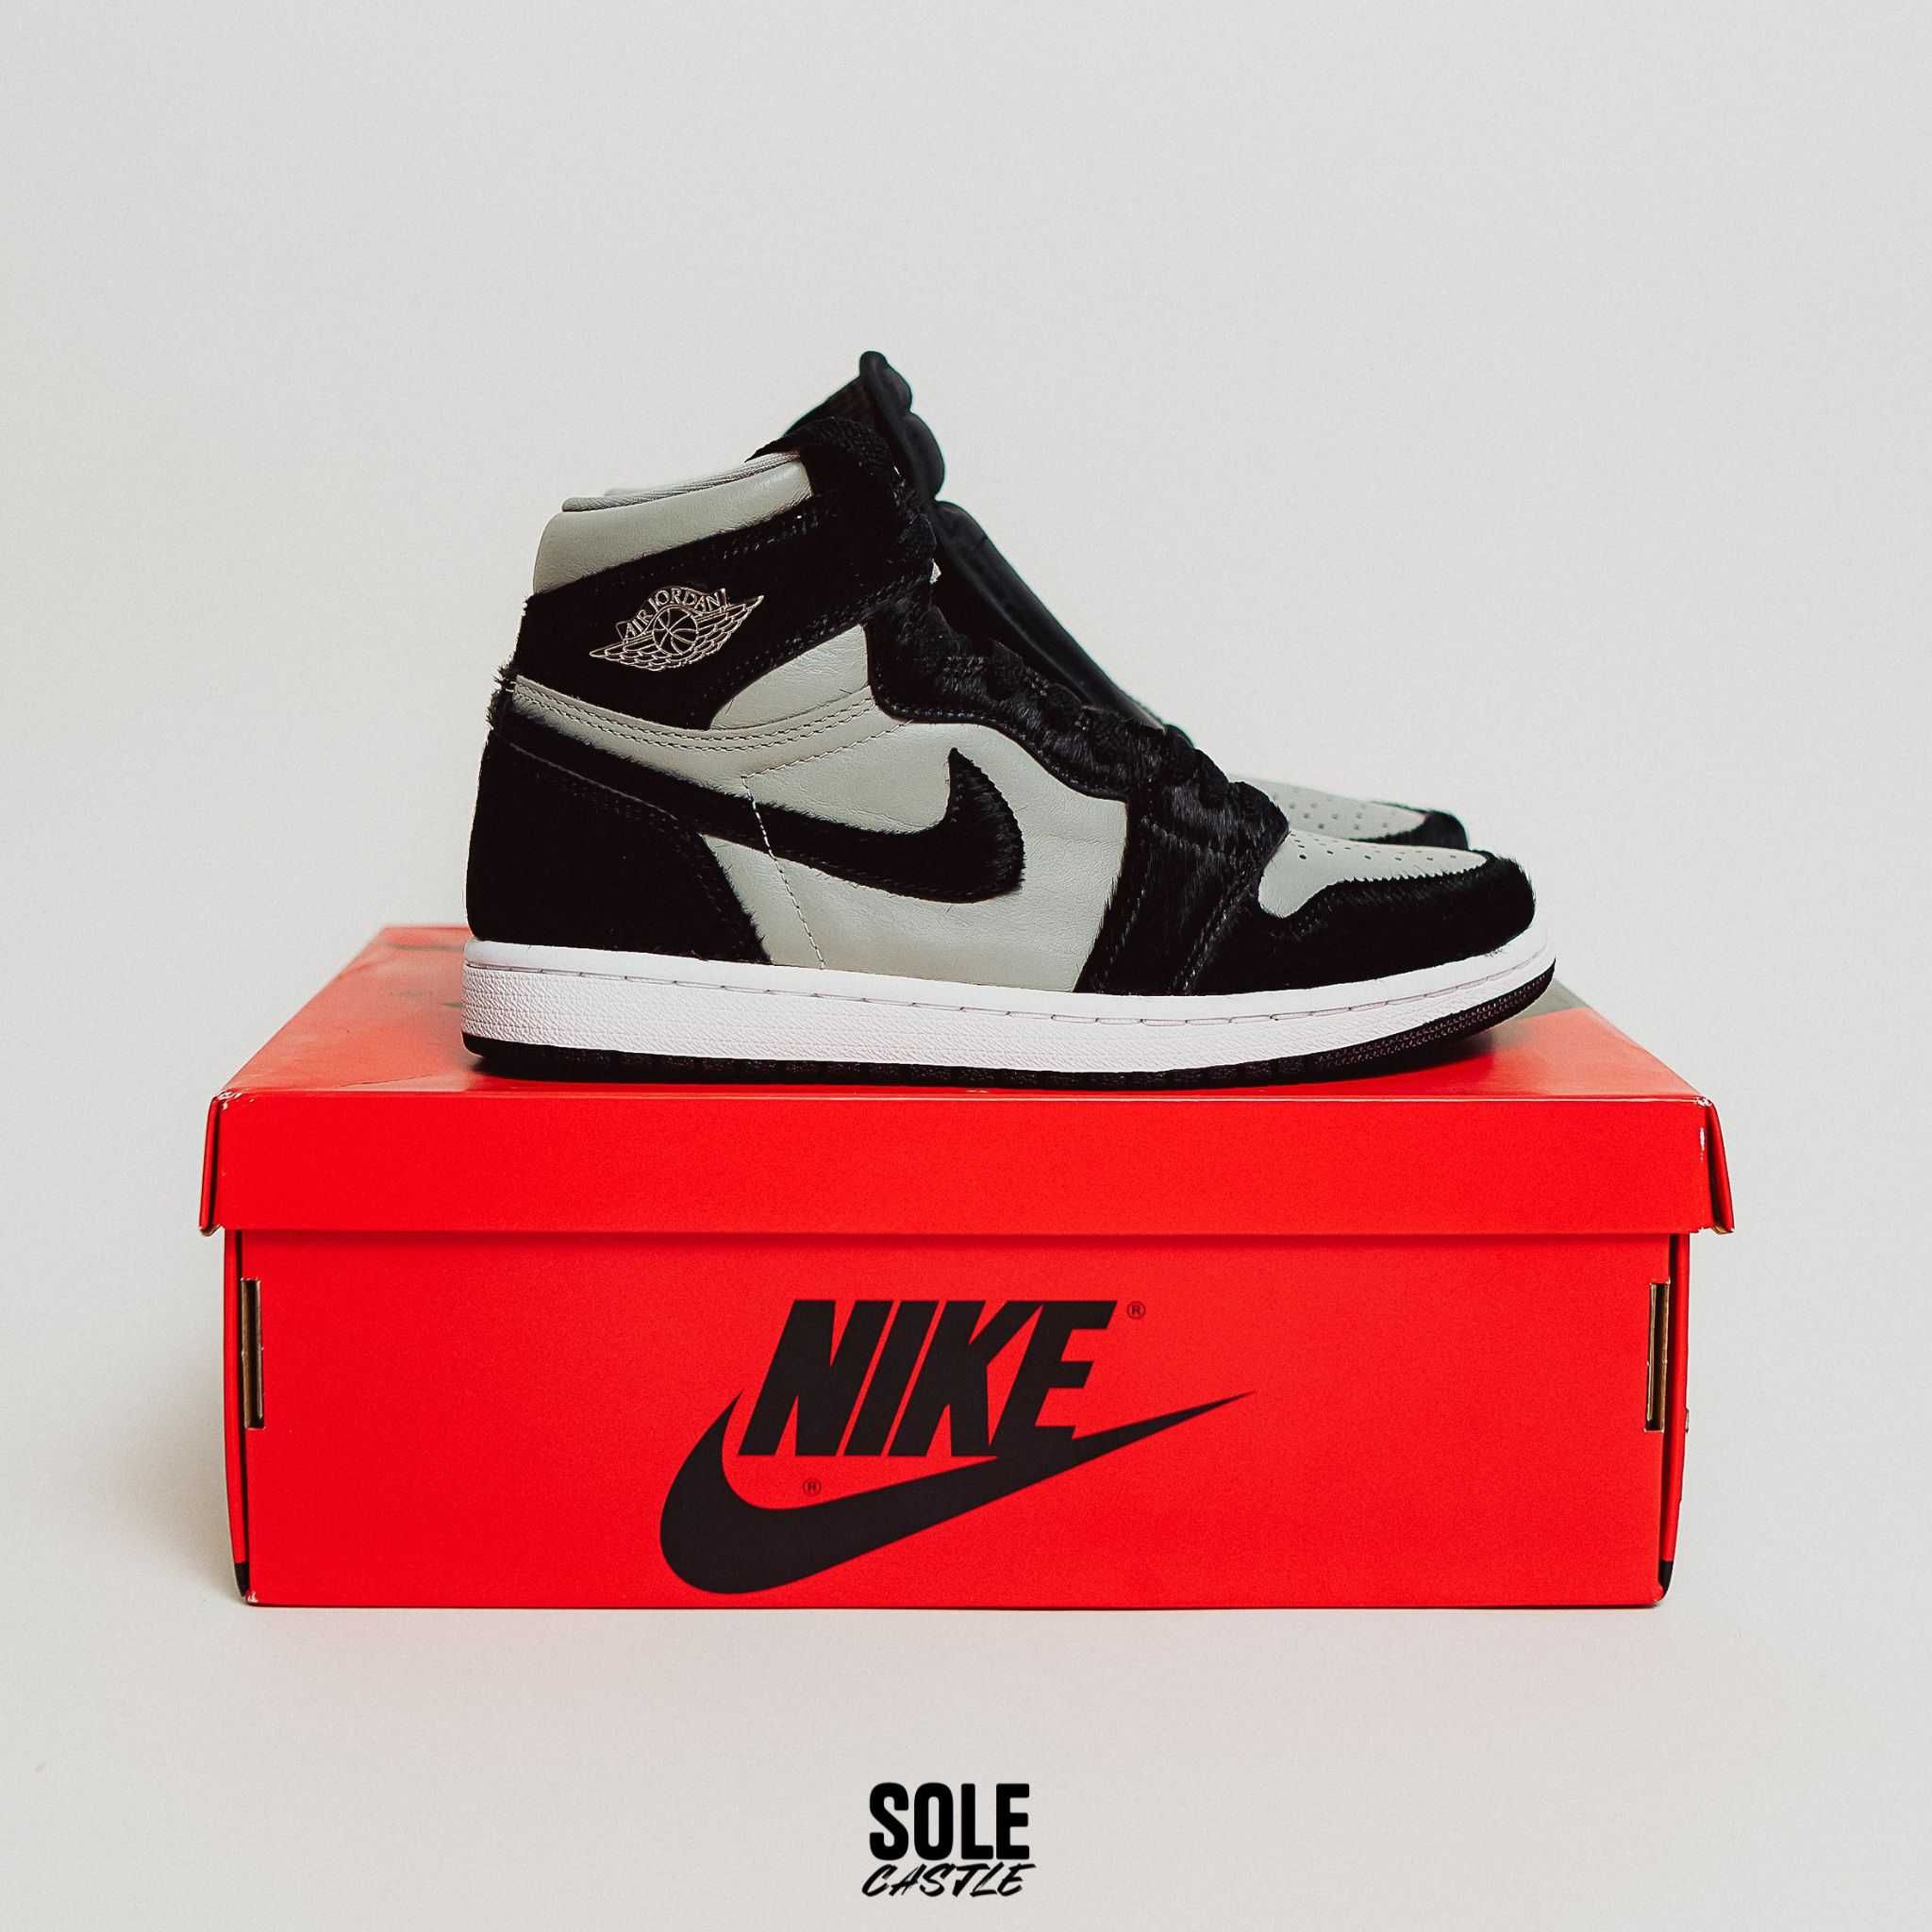 Nike Air Jordan 1 High OG "Twist 2.0 Medium Grey" (nu adidas, yeezy)